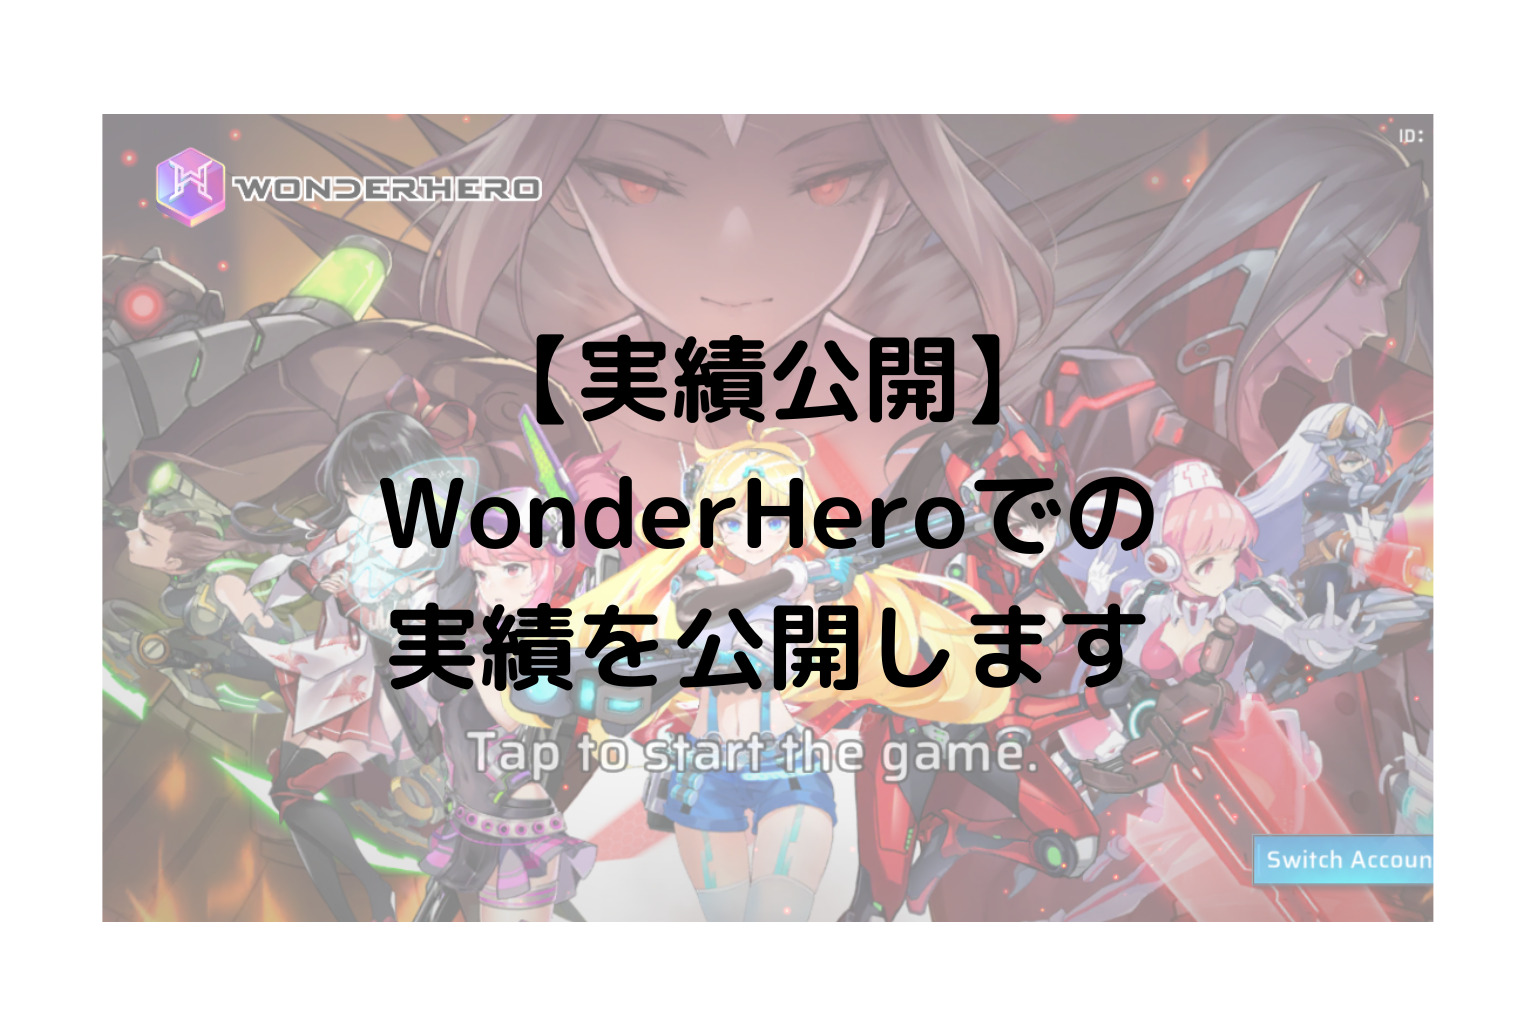 【実績公開】WonderHeroでの実績を公開します